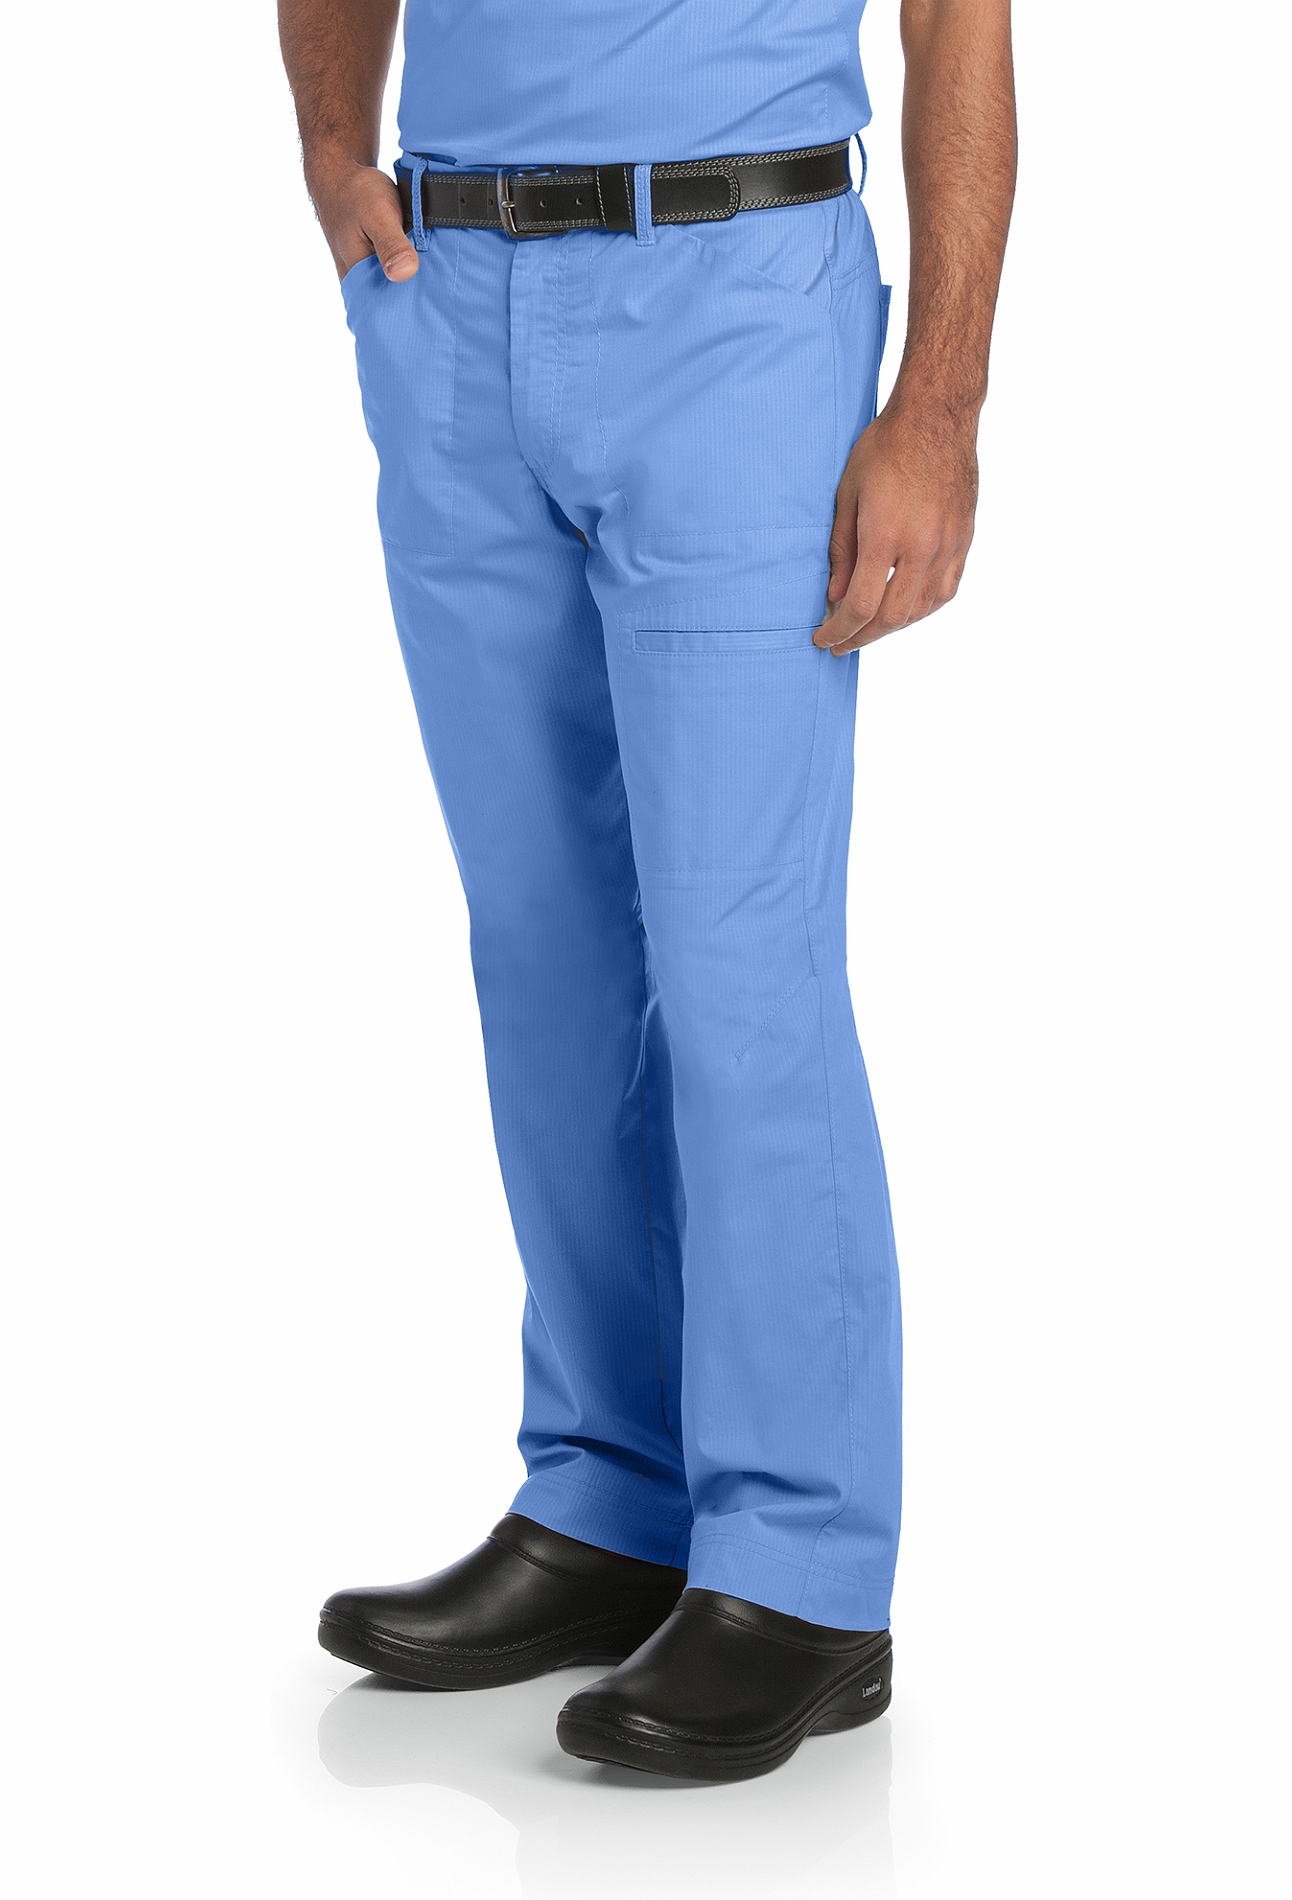 Landau Men's Ripstop Cargo Scrub Pants-2026 | Medical Scrubs Collection